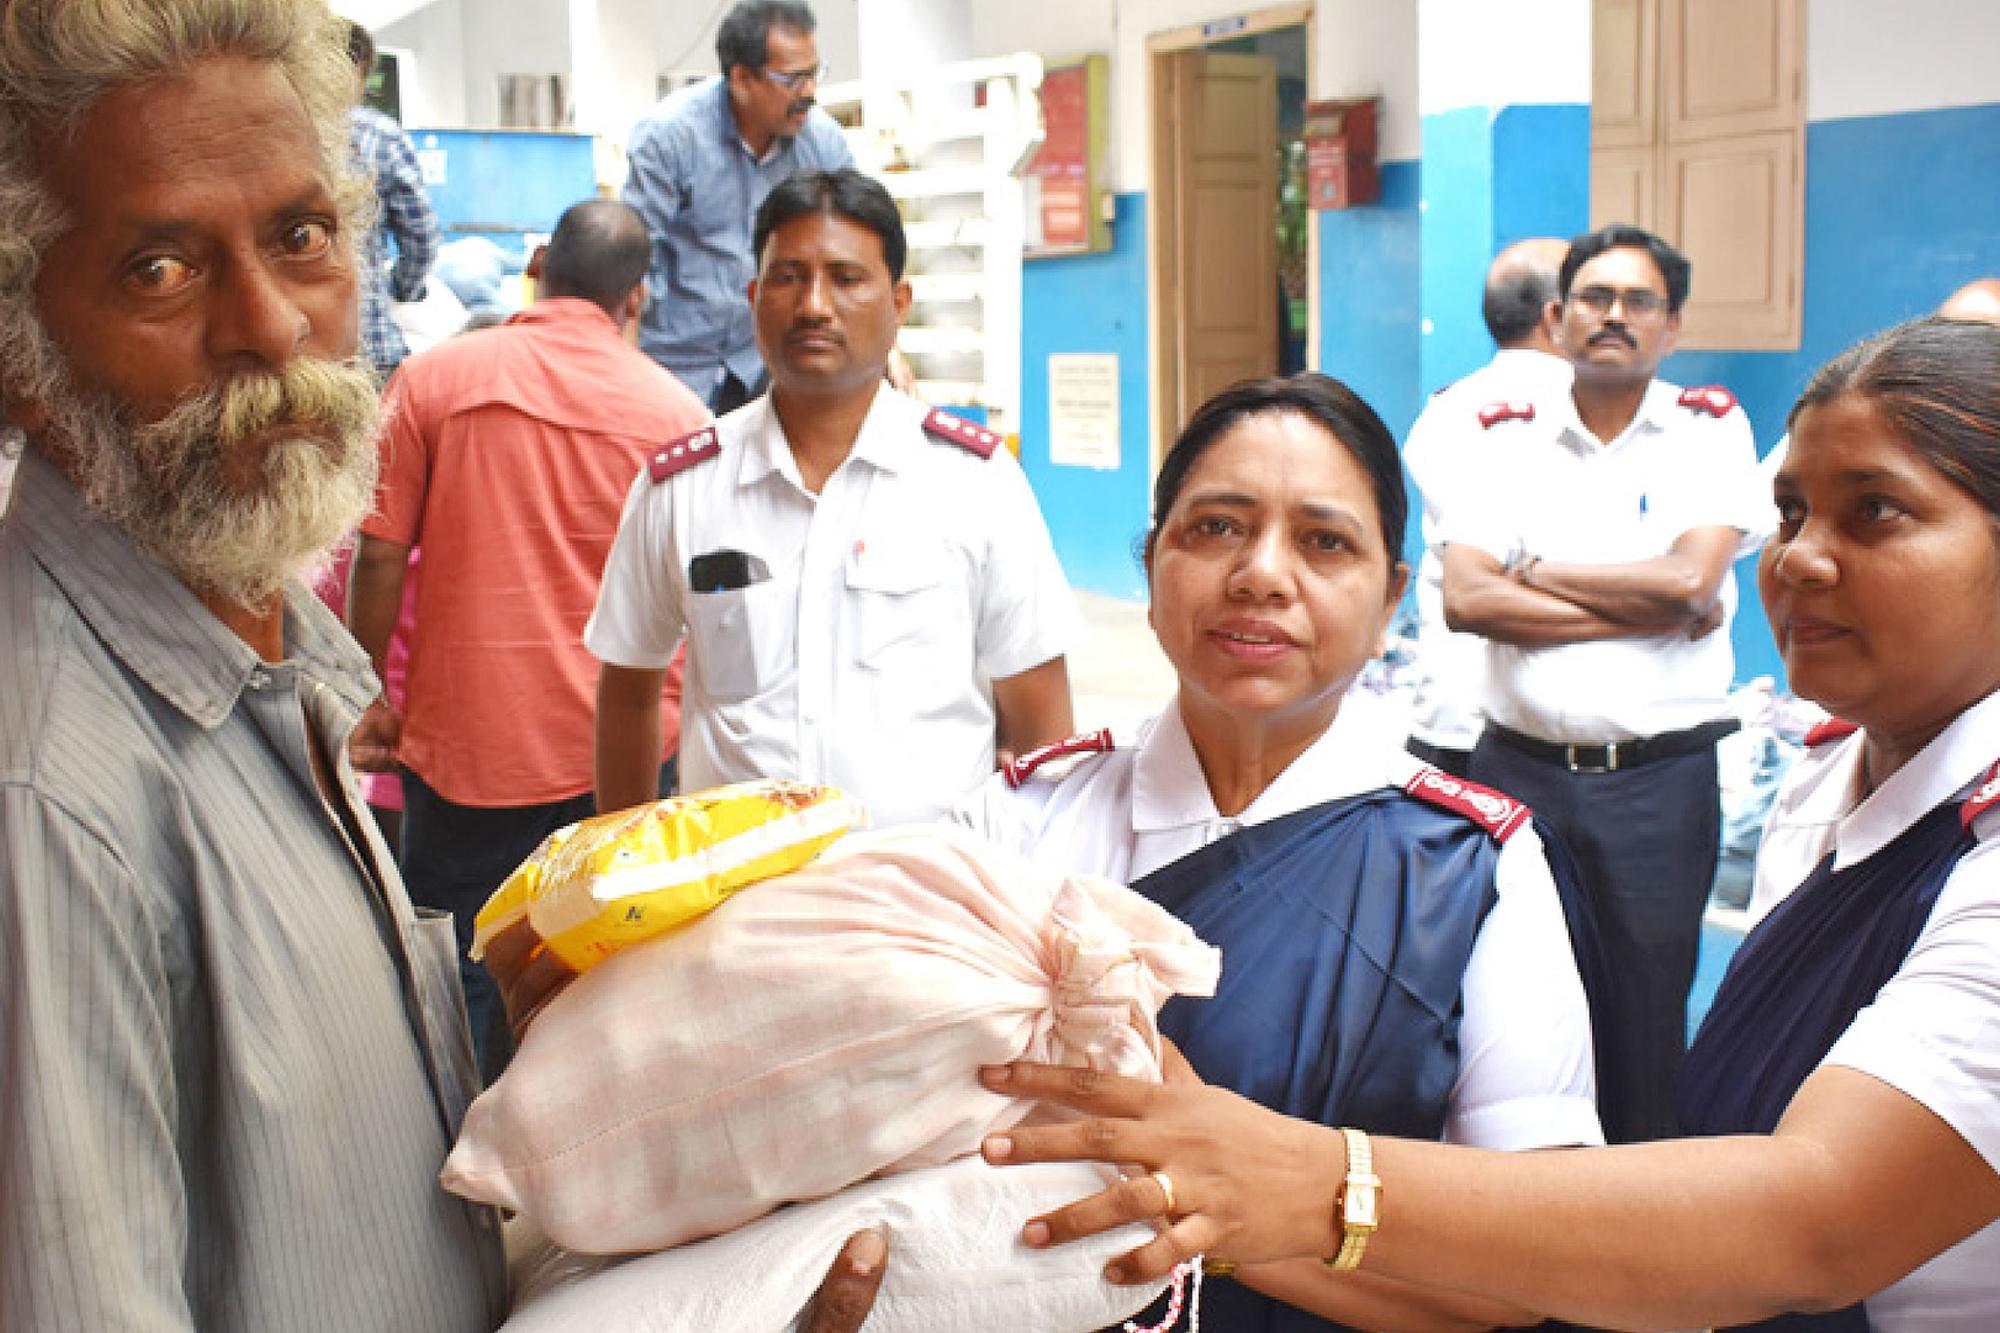 En äldre man i Indien tar emot säckar med förnödenheter från två kvinnor som bär Frälsningsarméns uniform.